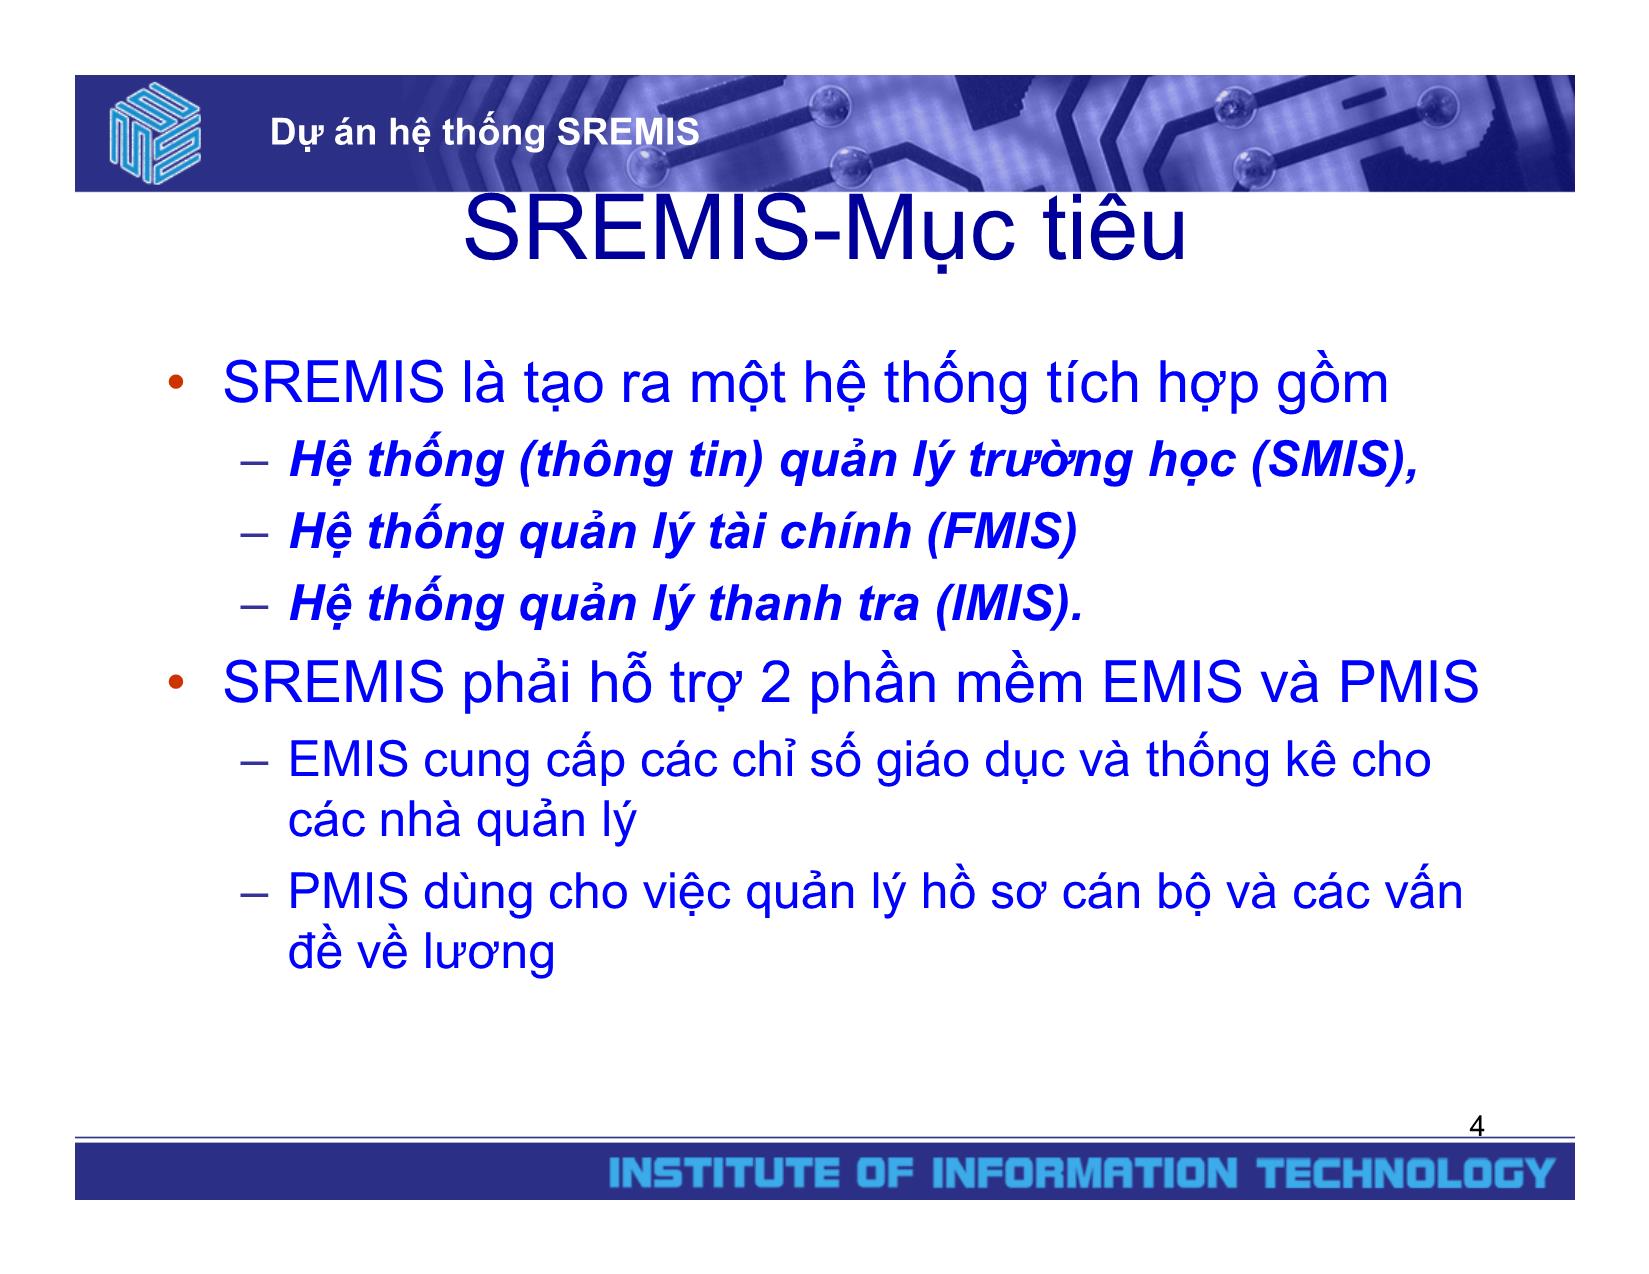 Dự án hệ thống SREMIS trang 4